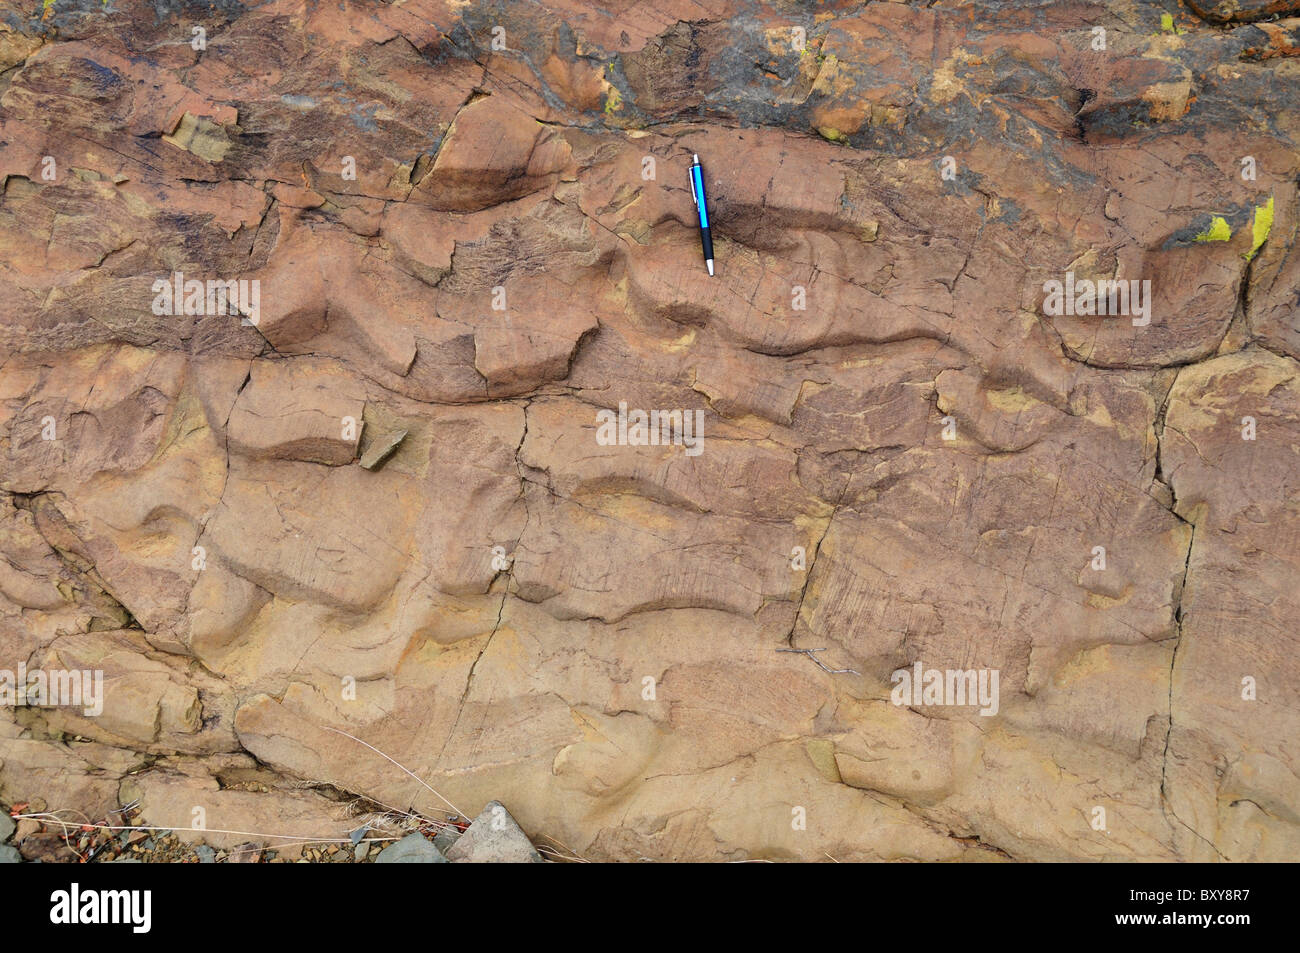 Welligkeit Markierungen auf Gesteinsoberfläche ausgesetzt. Karoo-Becken, Südafrika. Stockfoto